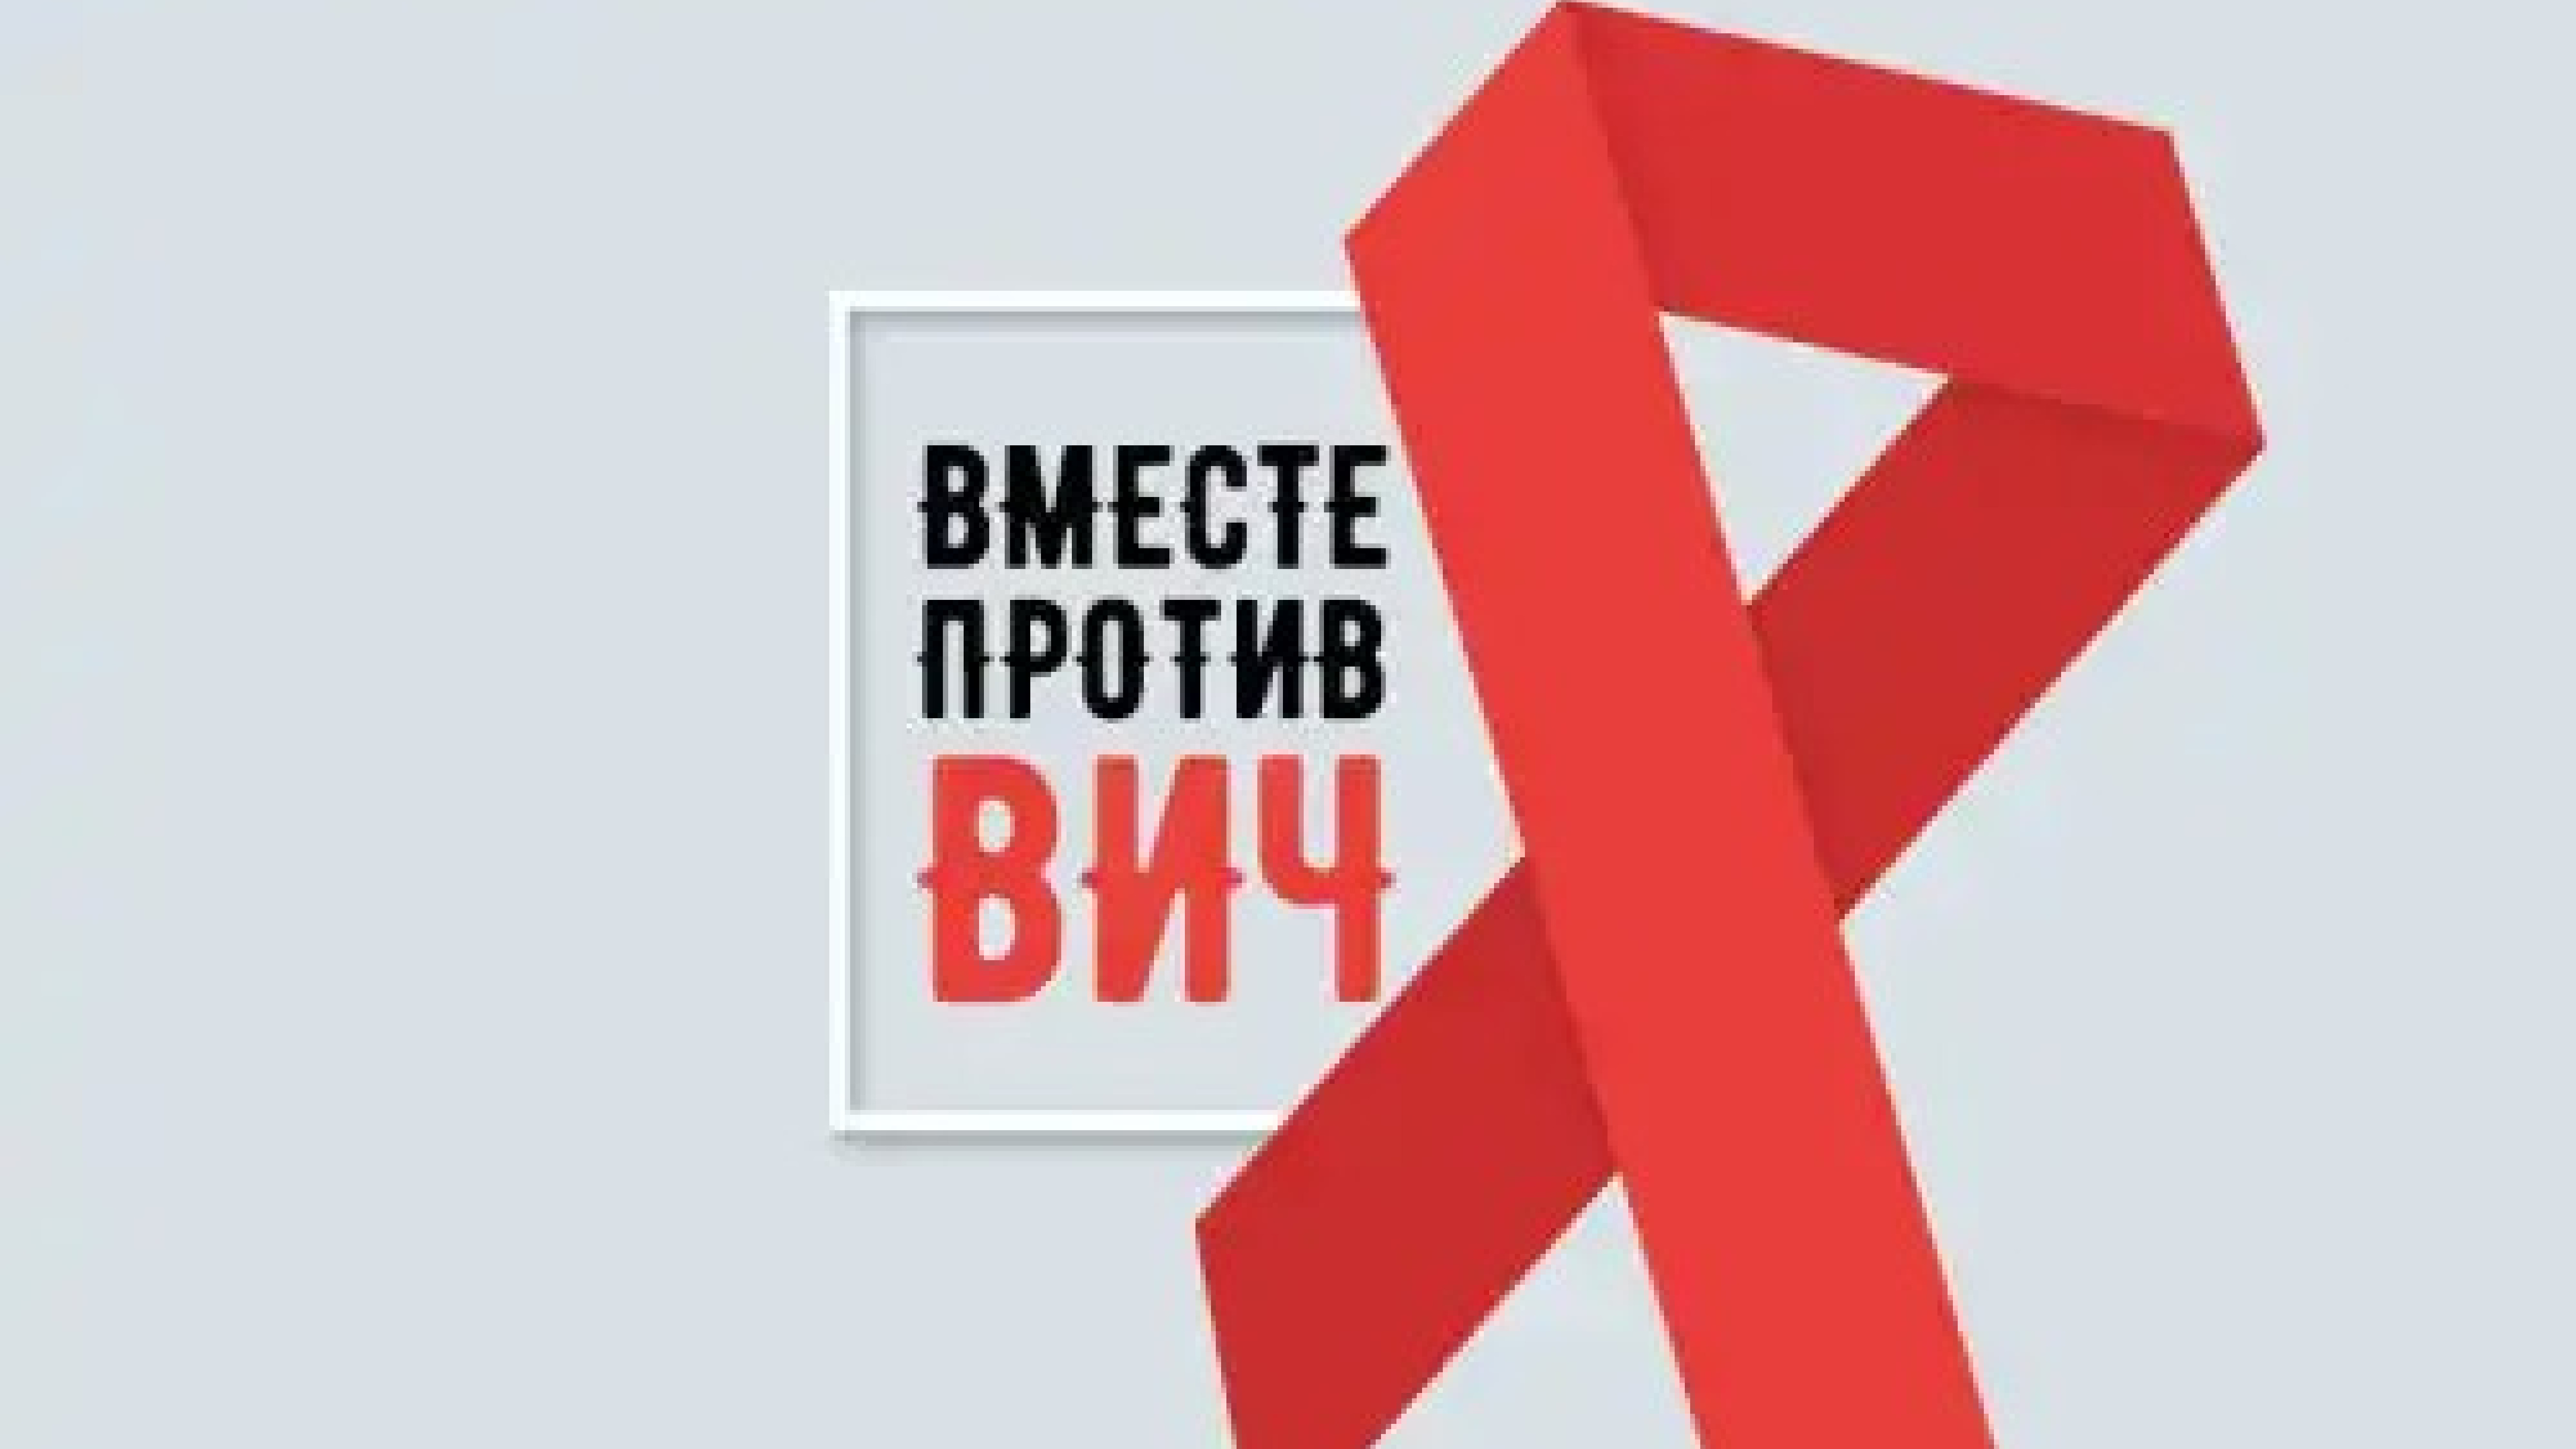 Слоганы против. Против СПИДА. Мы против ВИЧ. Лозунги против СПИДА. Вместе против ВИЧ.